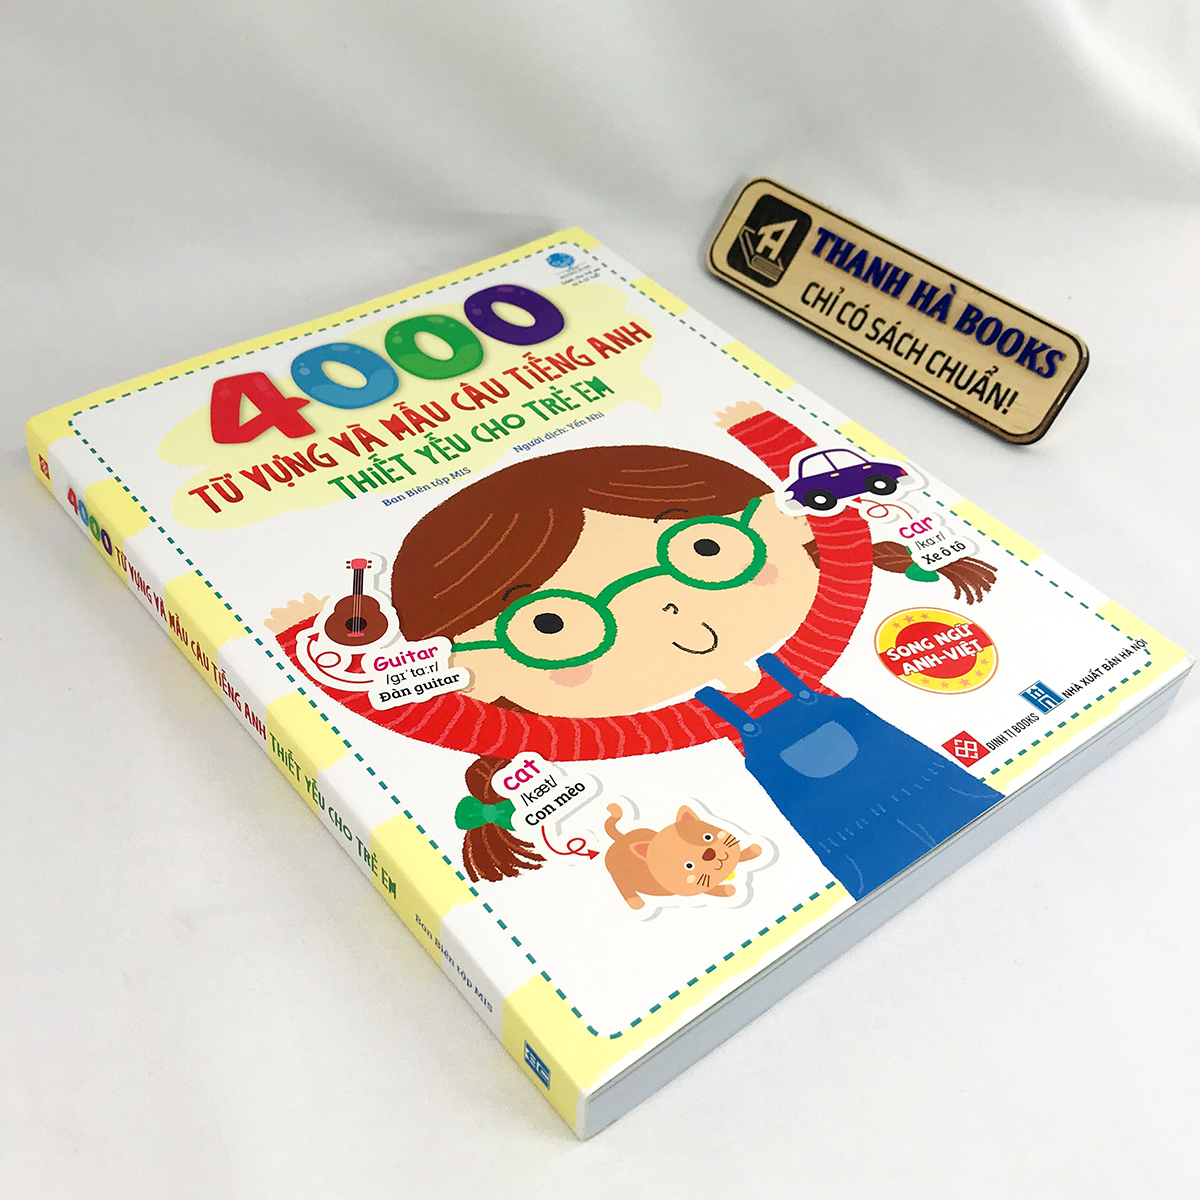 Sách 4000 Từ Vựng Và Mẫu Câu Tiếng Anh Thiết Yếu Cho Trẻ Em (Song ngữ Anh-Việt cho bé từ 4-12 tuổi) - Thanh Hà Books